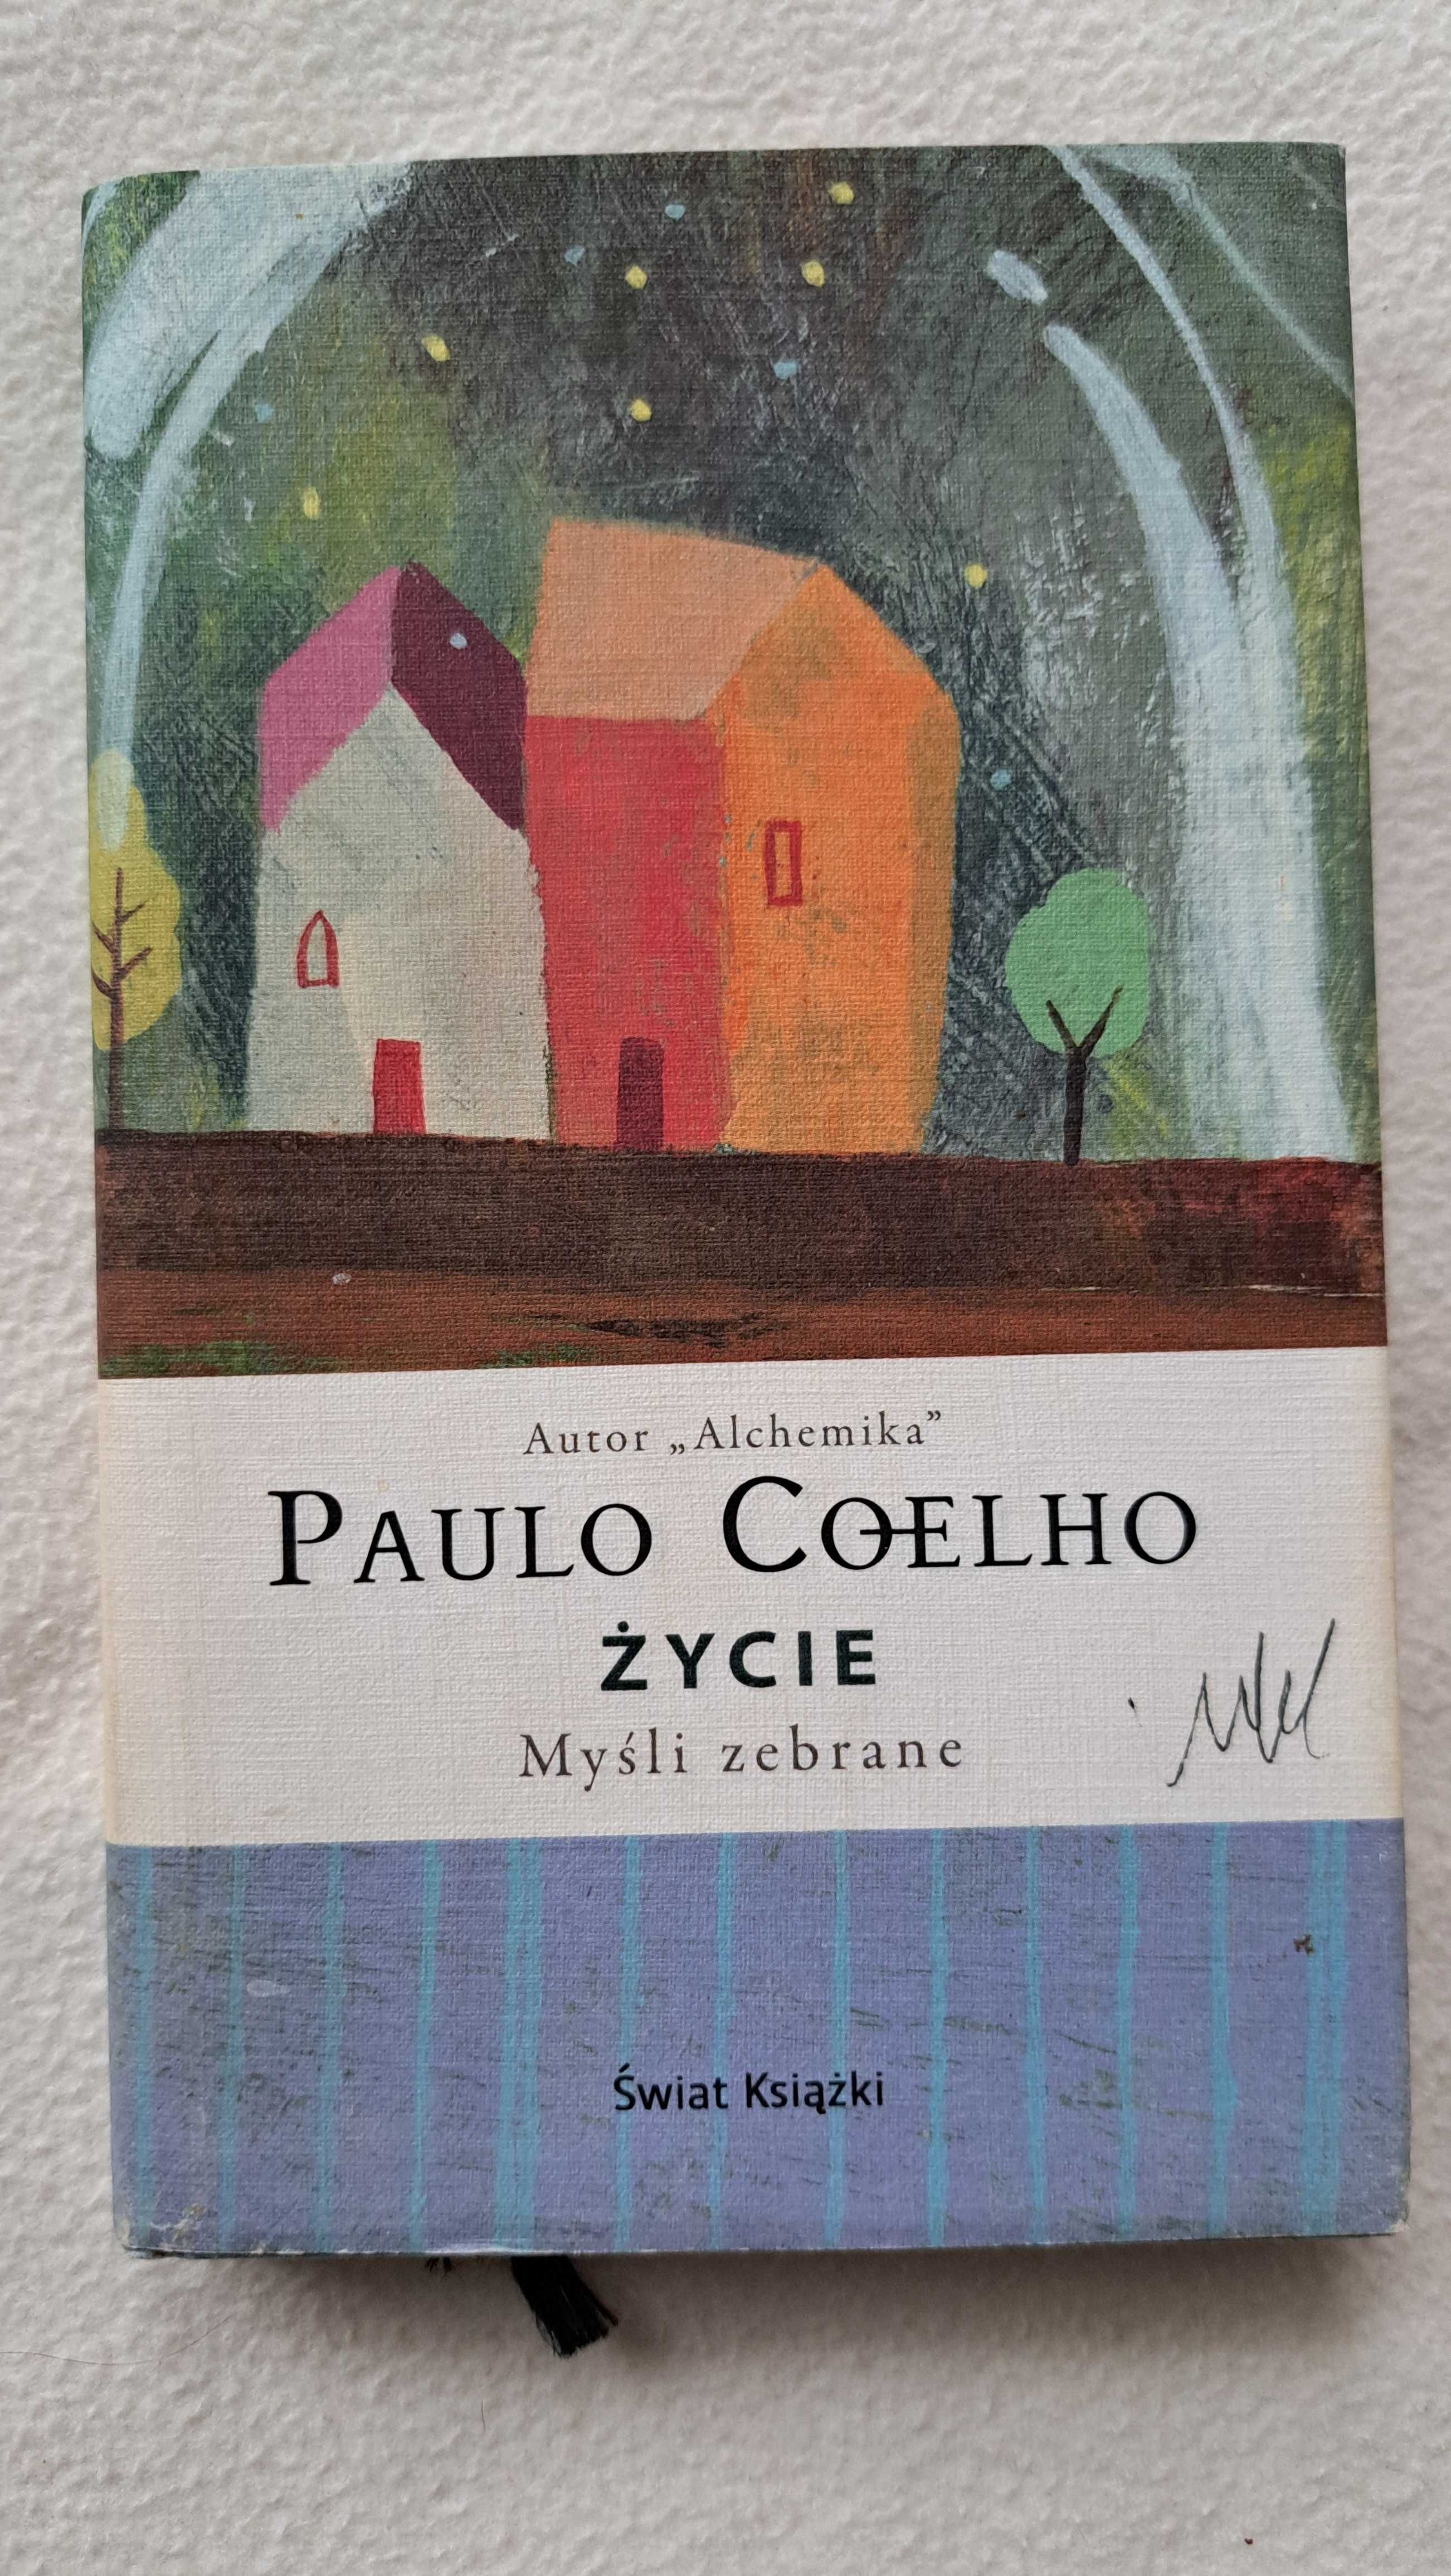 Paulo Coelho ŻYCIE Myśli zebrane